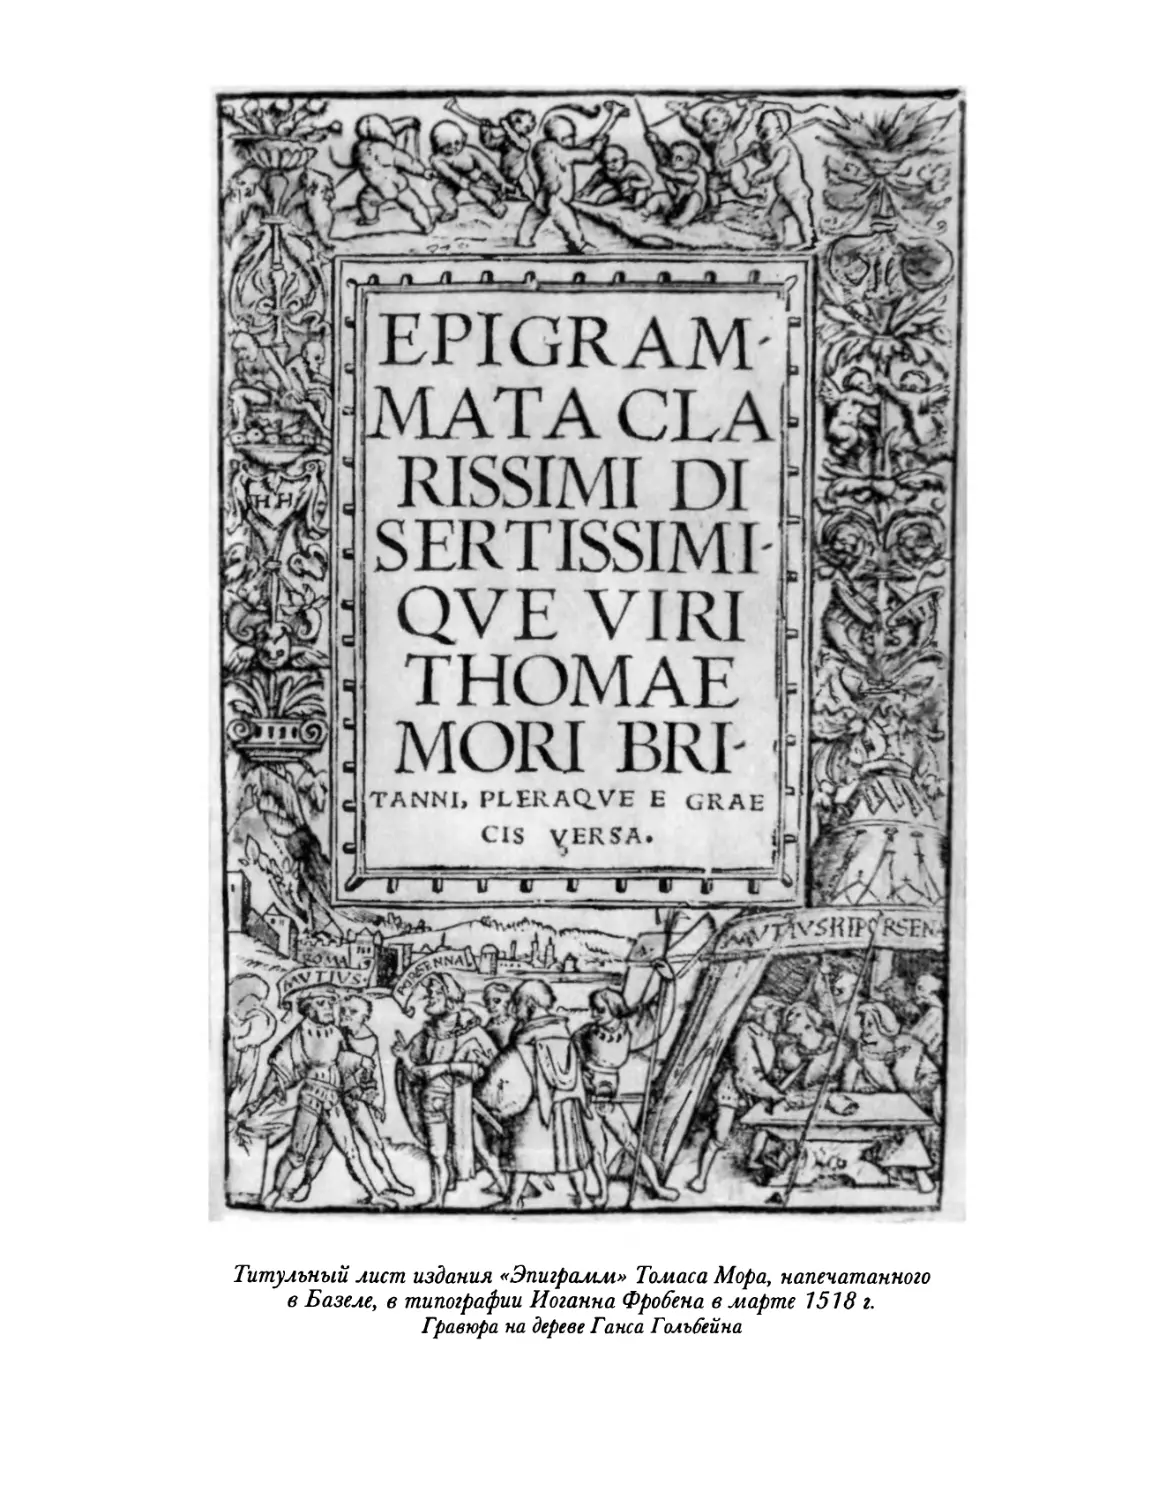 Титульный лист издания «Эпиграмм» Томаса Мора, напечатанного в Базеле, в типографии Иоганна Фробена в марте 1518 г.